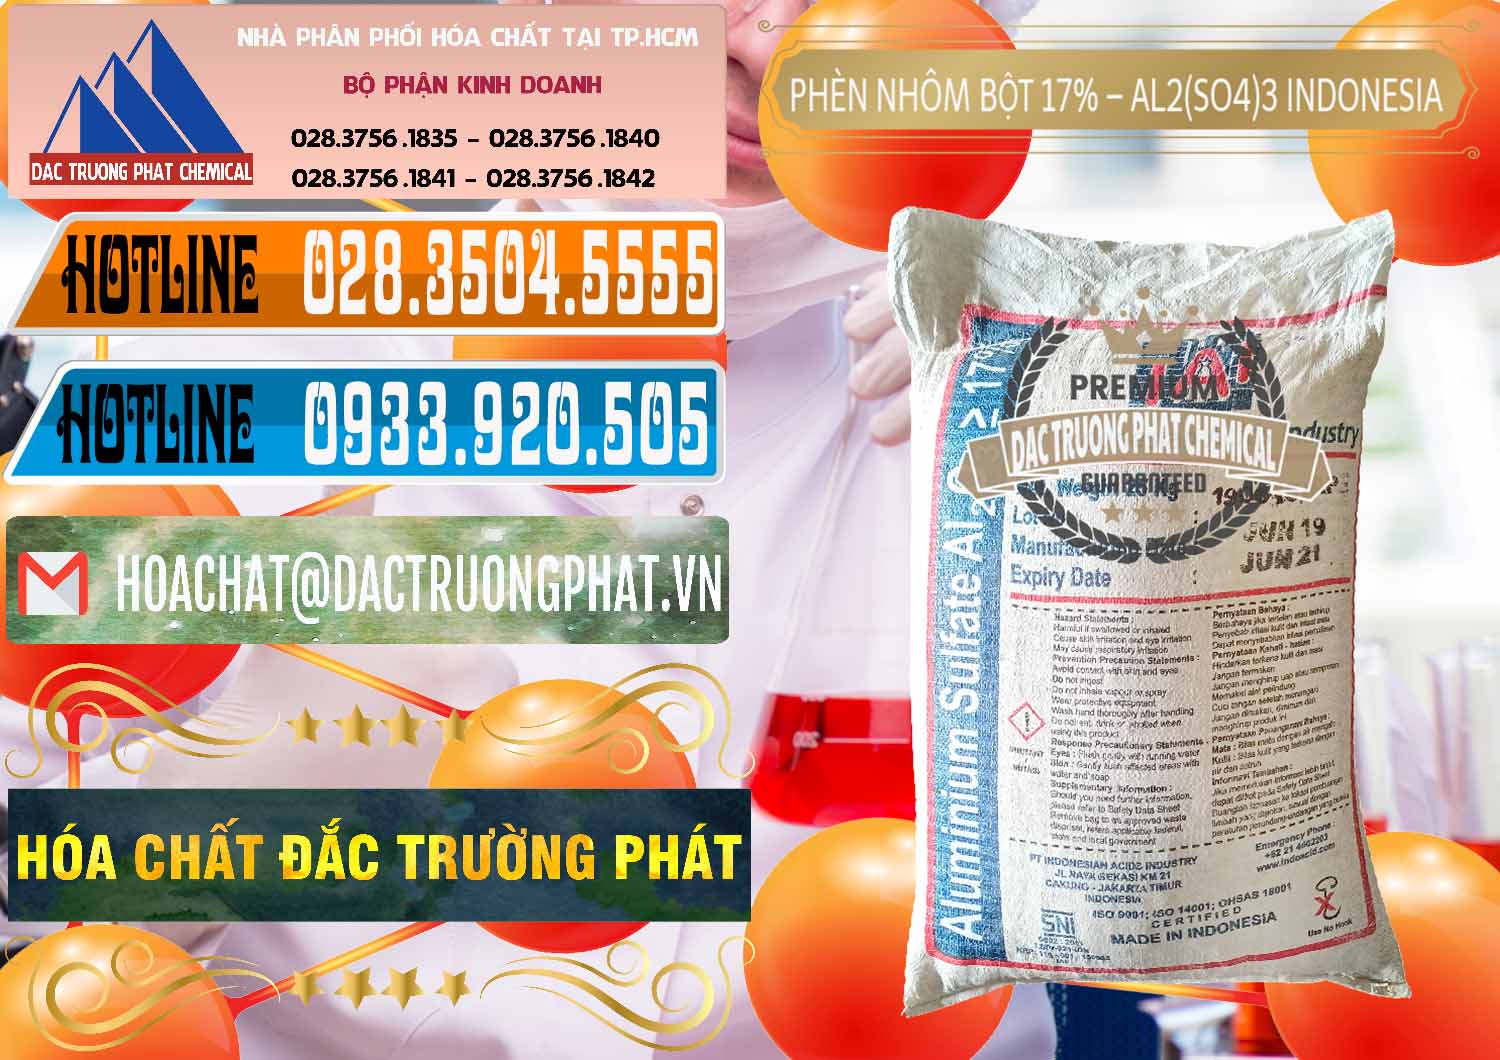 Cty chuyên bán _ cung ứng Phèn Nhôm Bột - Al2(SO4)3 17% bao 25kg Indonesia - 0114 - Chuyên phân phối _ bán hóa chất tại TP.HCM - stmp.net